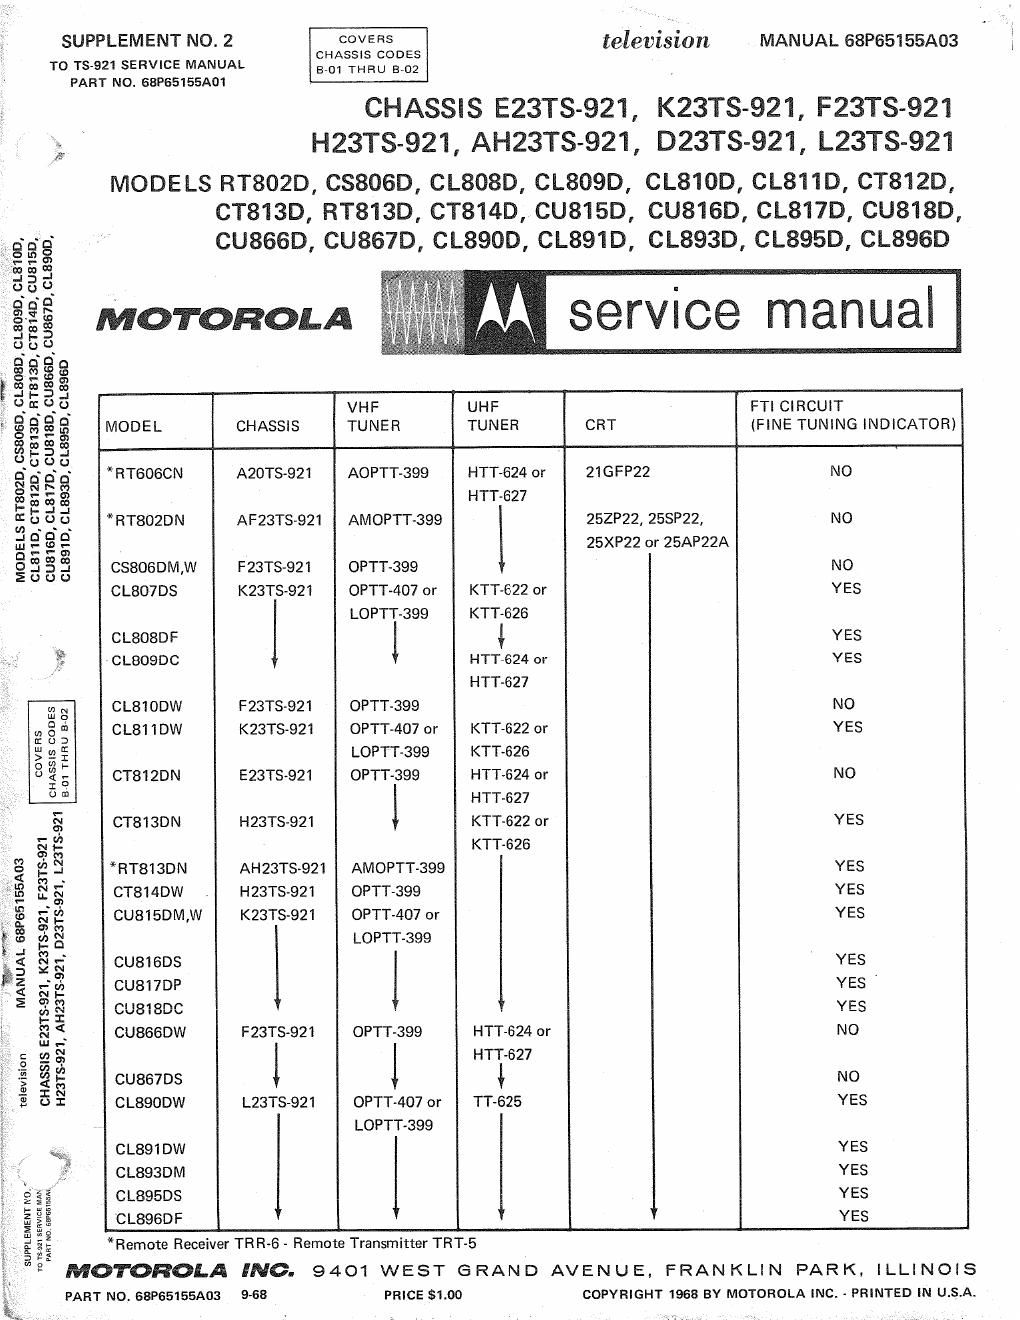 motorola cu 818 d service manual